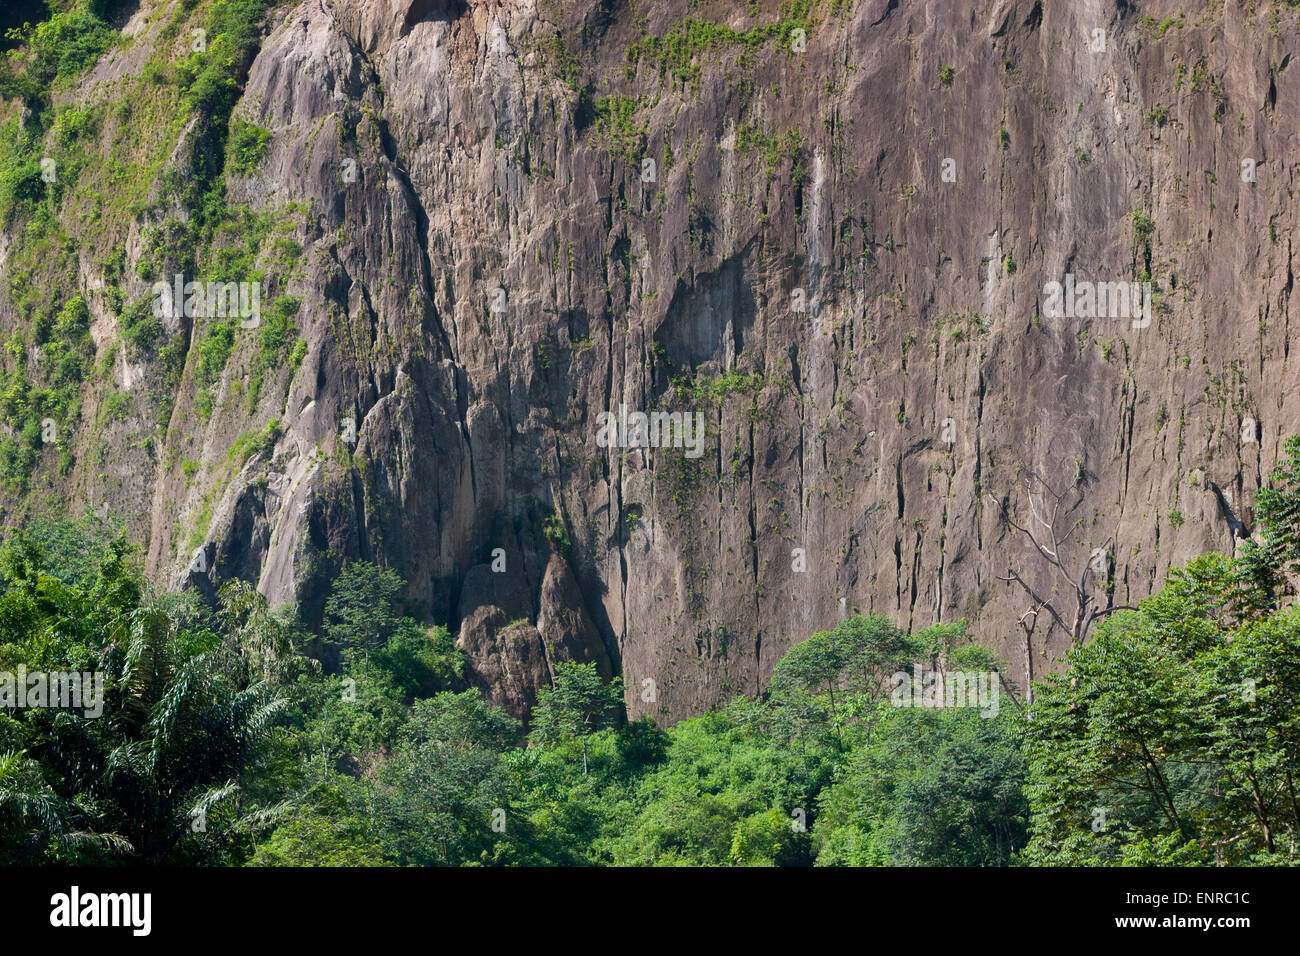 Una grande parete di roccia nella valle di Ngarai Sianok a Bukittinggi, Sumatra Occidentale, Indonesia. Foto Stock